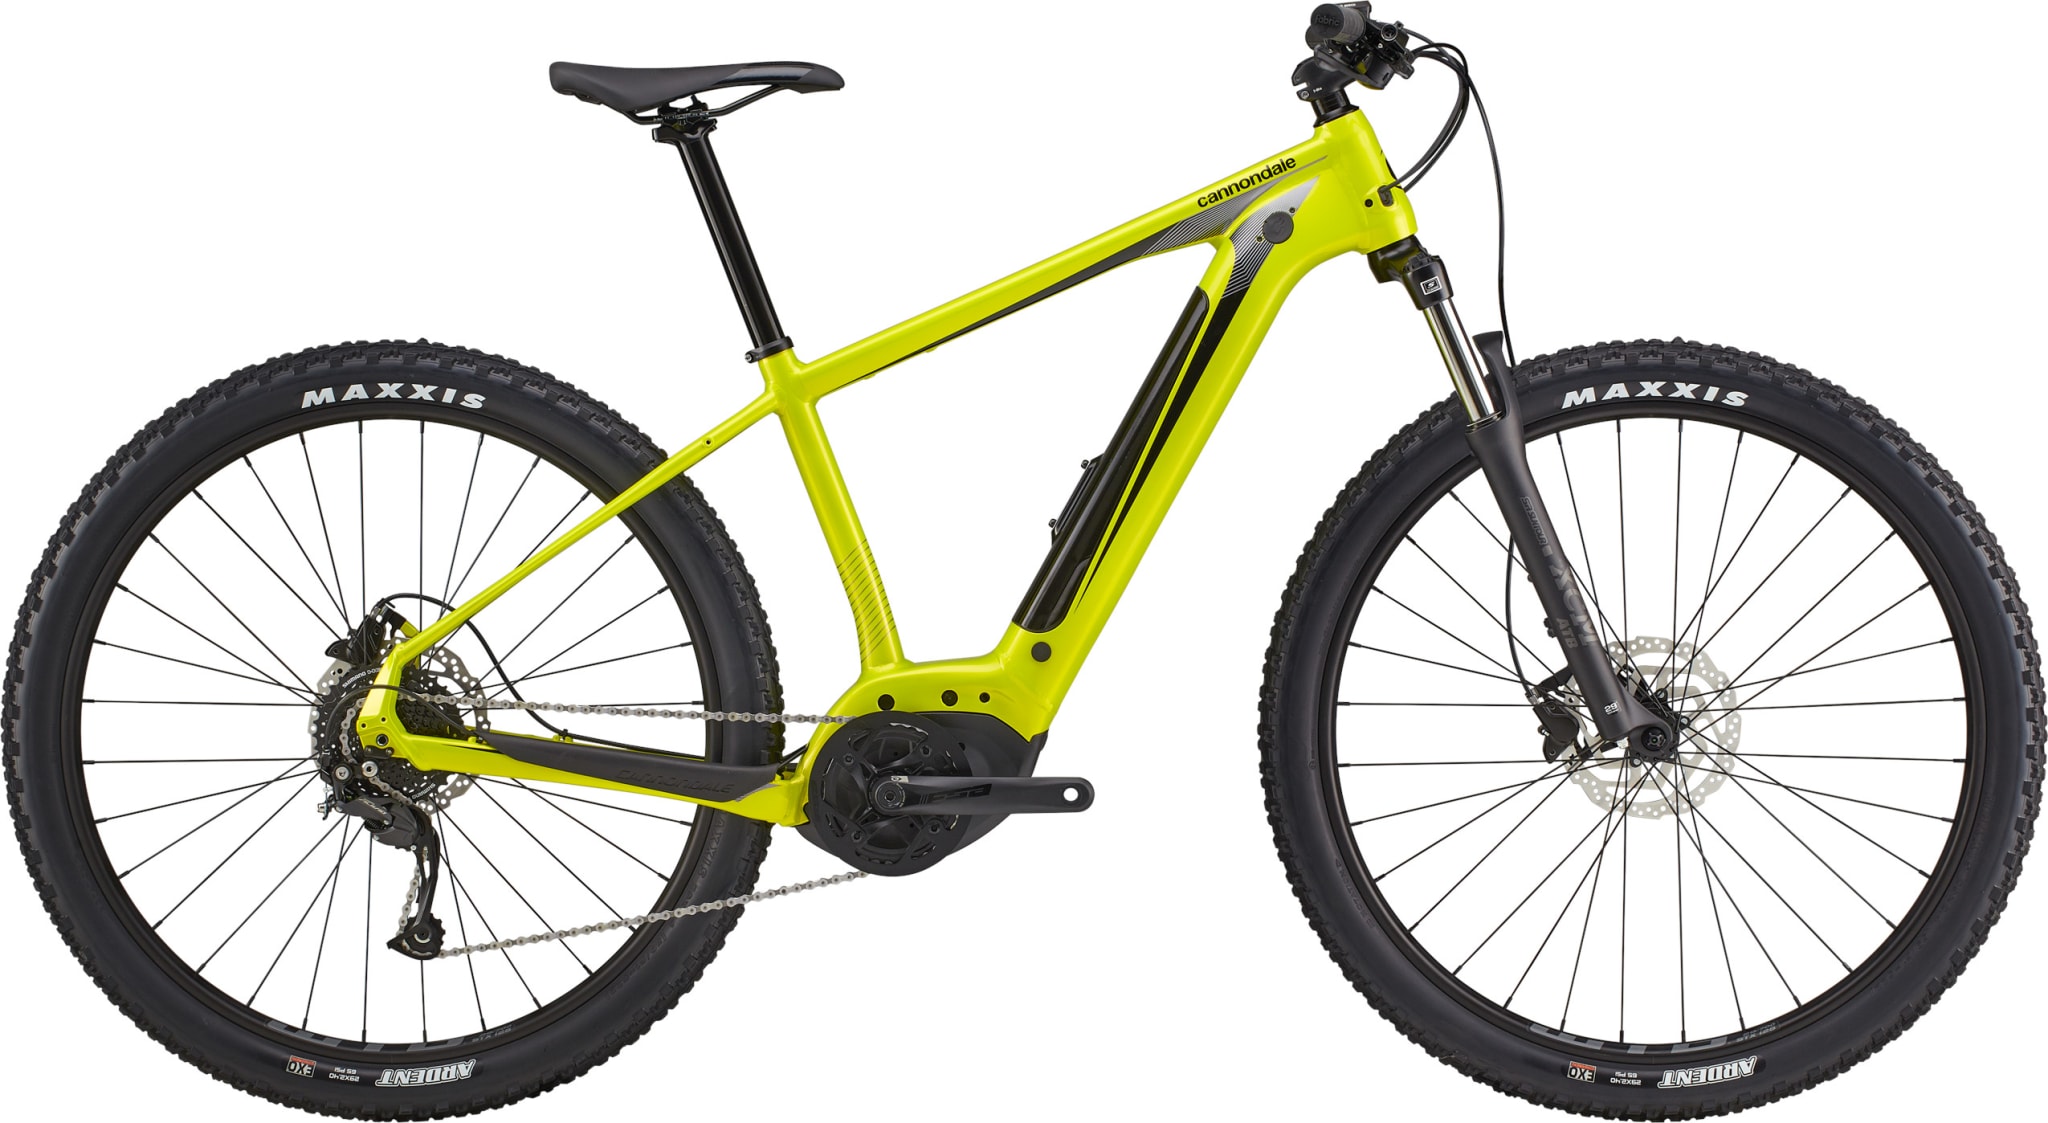 Perfekt el-sykkel for deg som vil sykle både på asfalt og i skogen